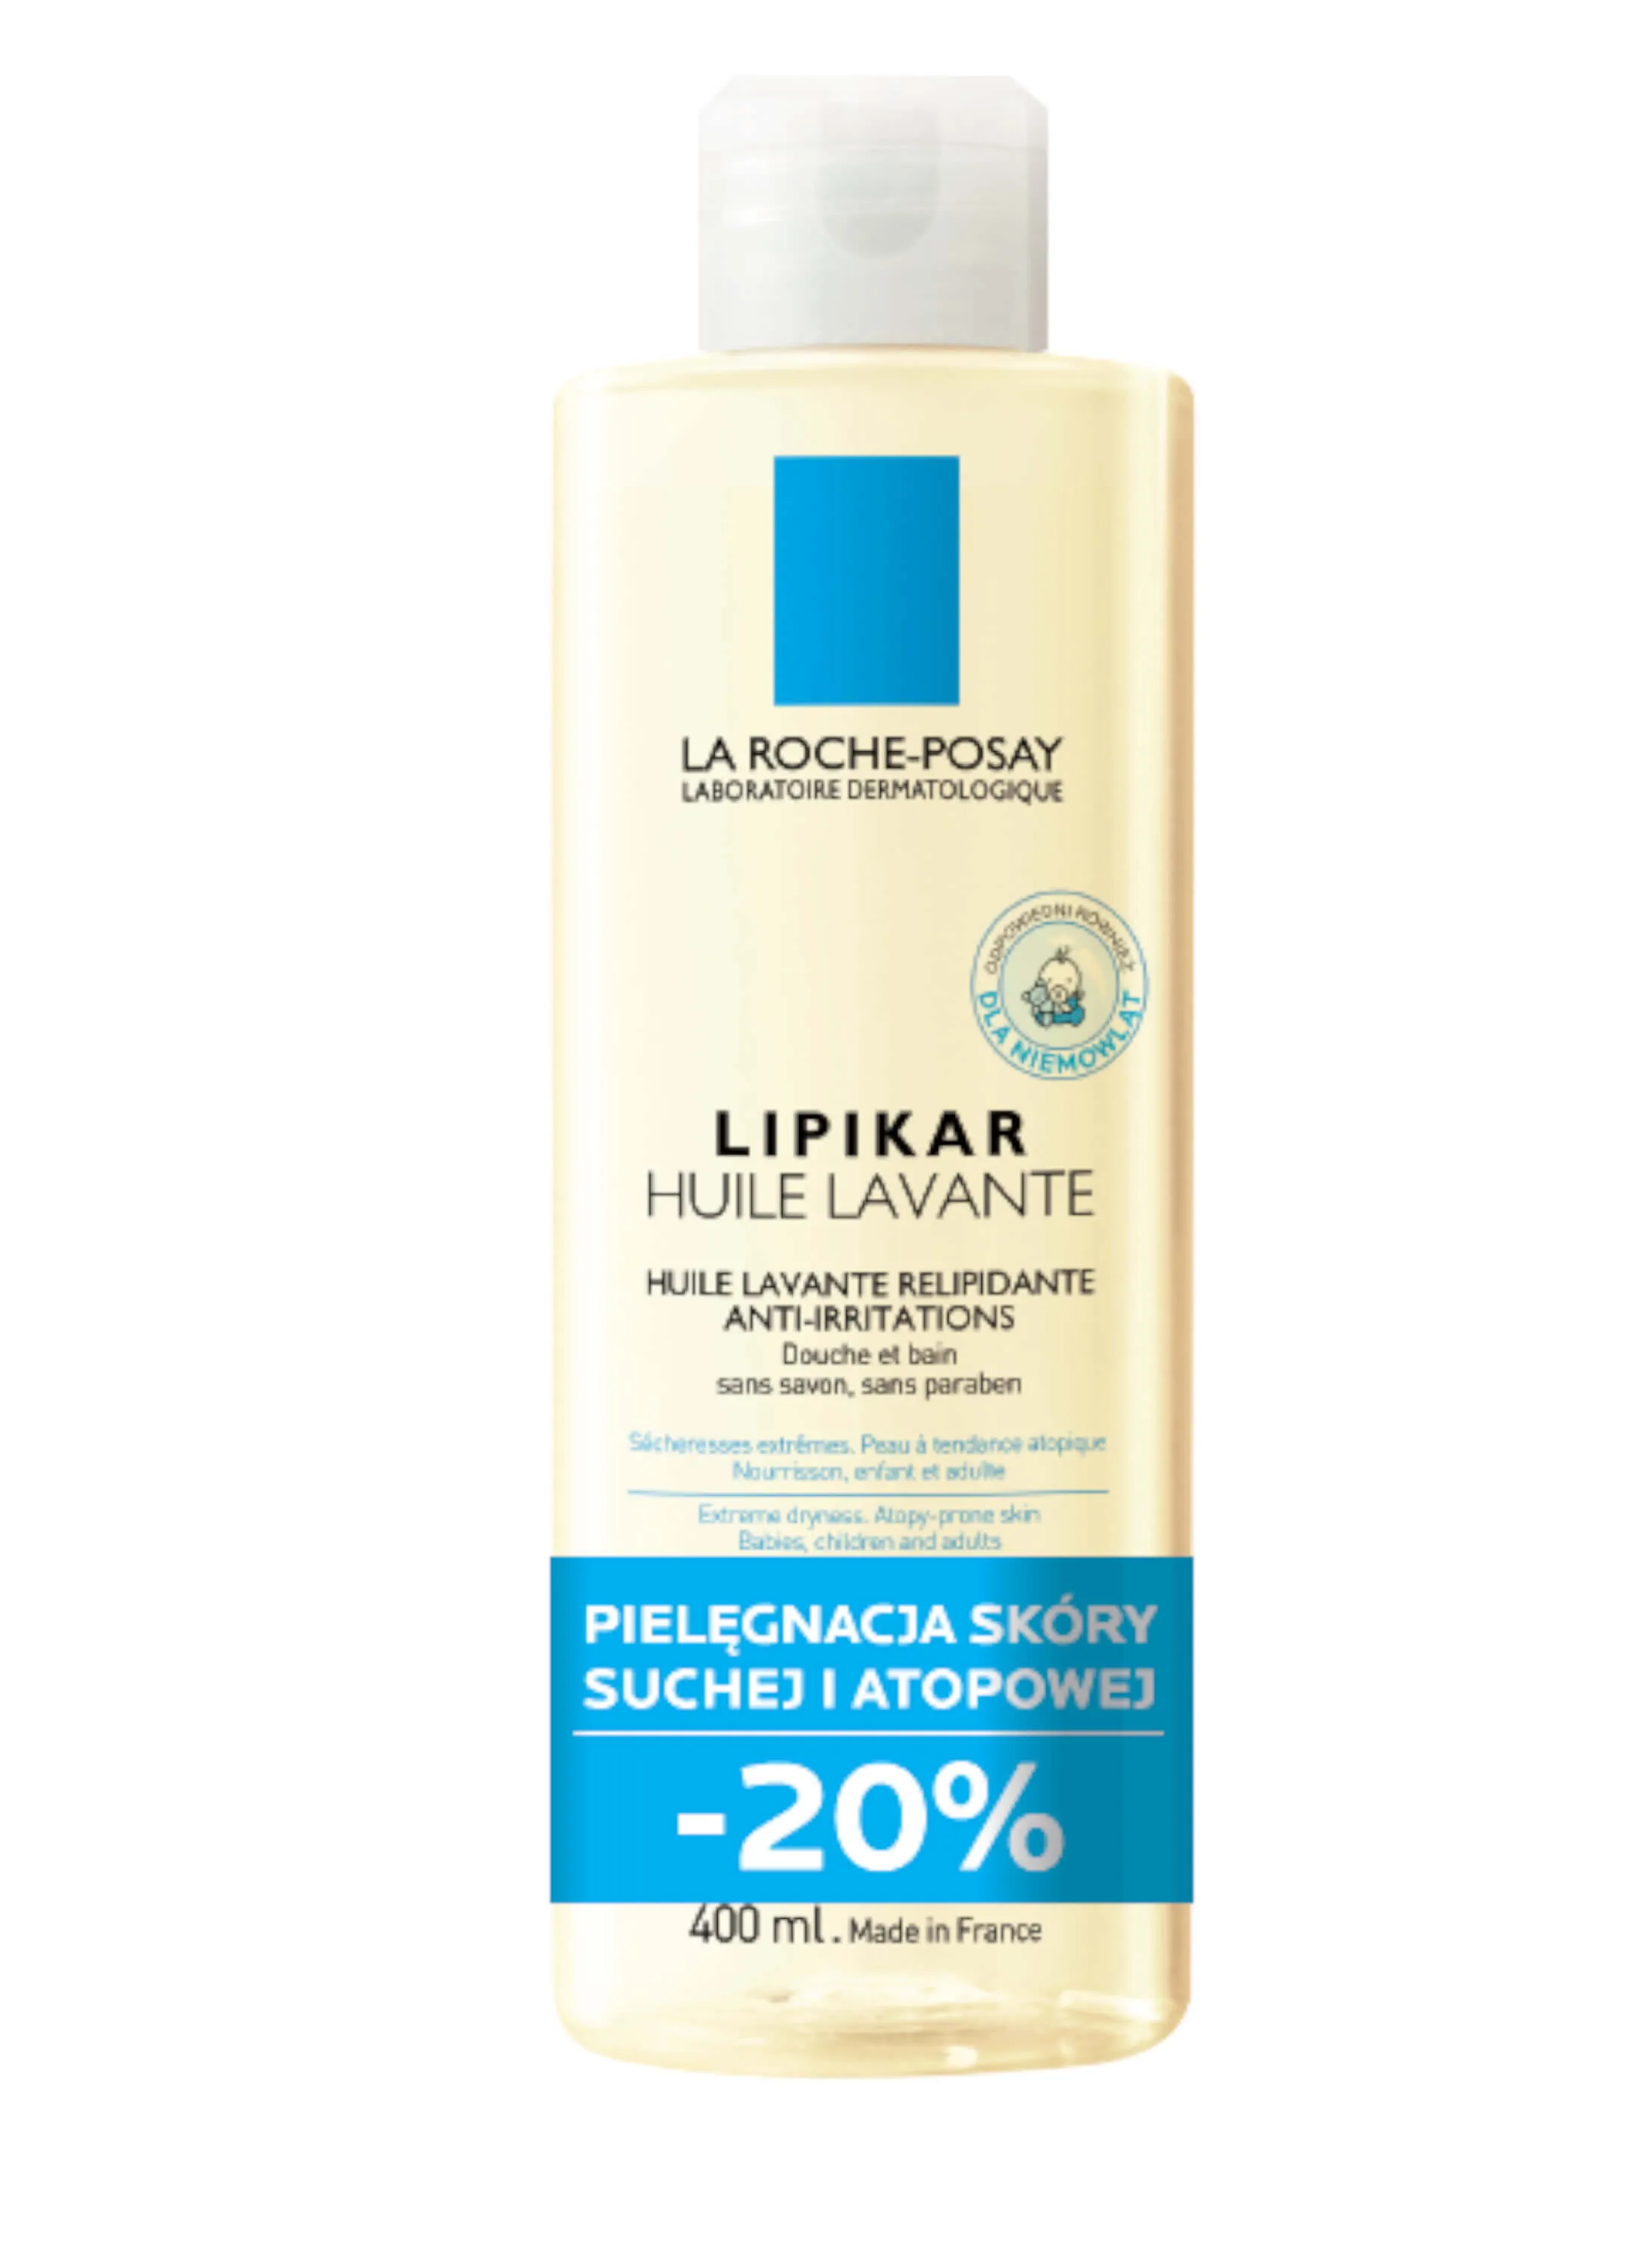 La Roche-Posay Lipikar Huile Lavante AP+, olejek myjący uzupełniający poziom lipidów, 400 ml